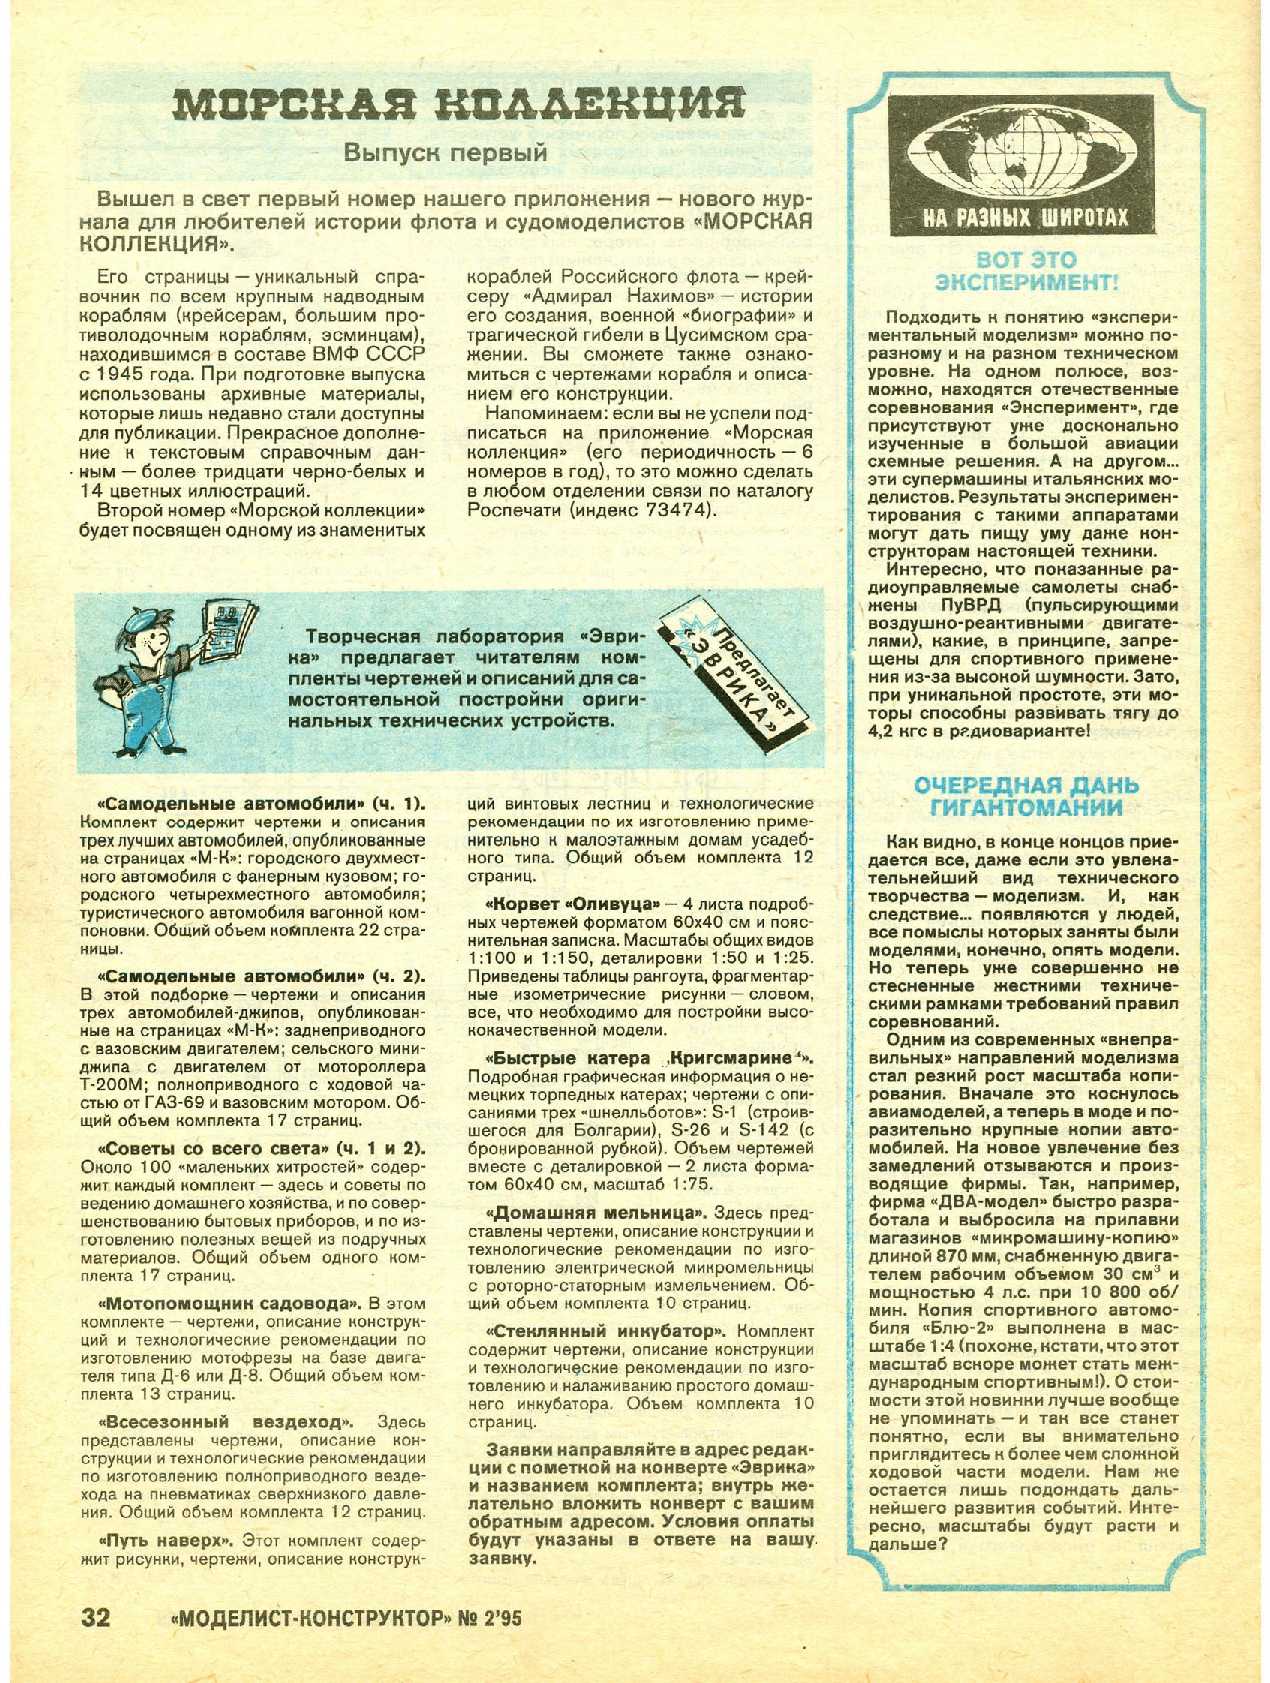 МК 2, 1995, 32 c.